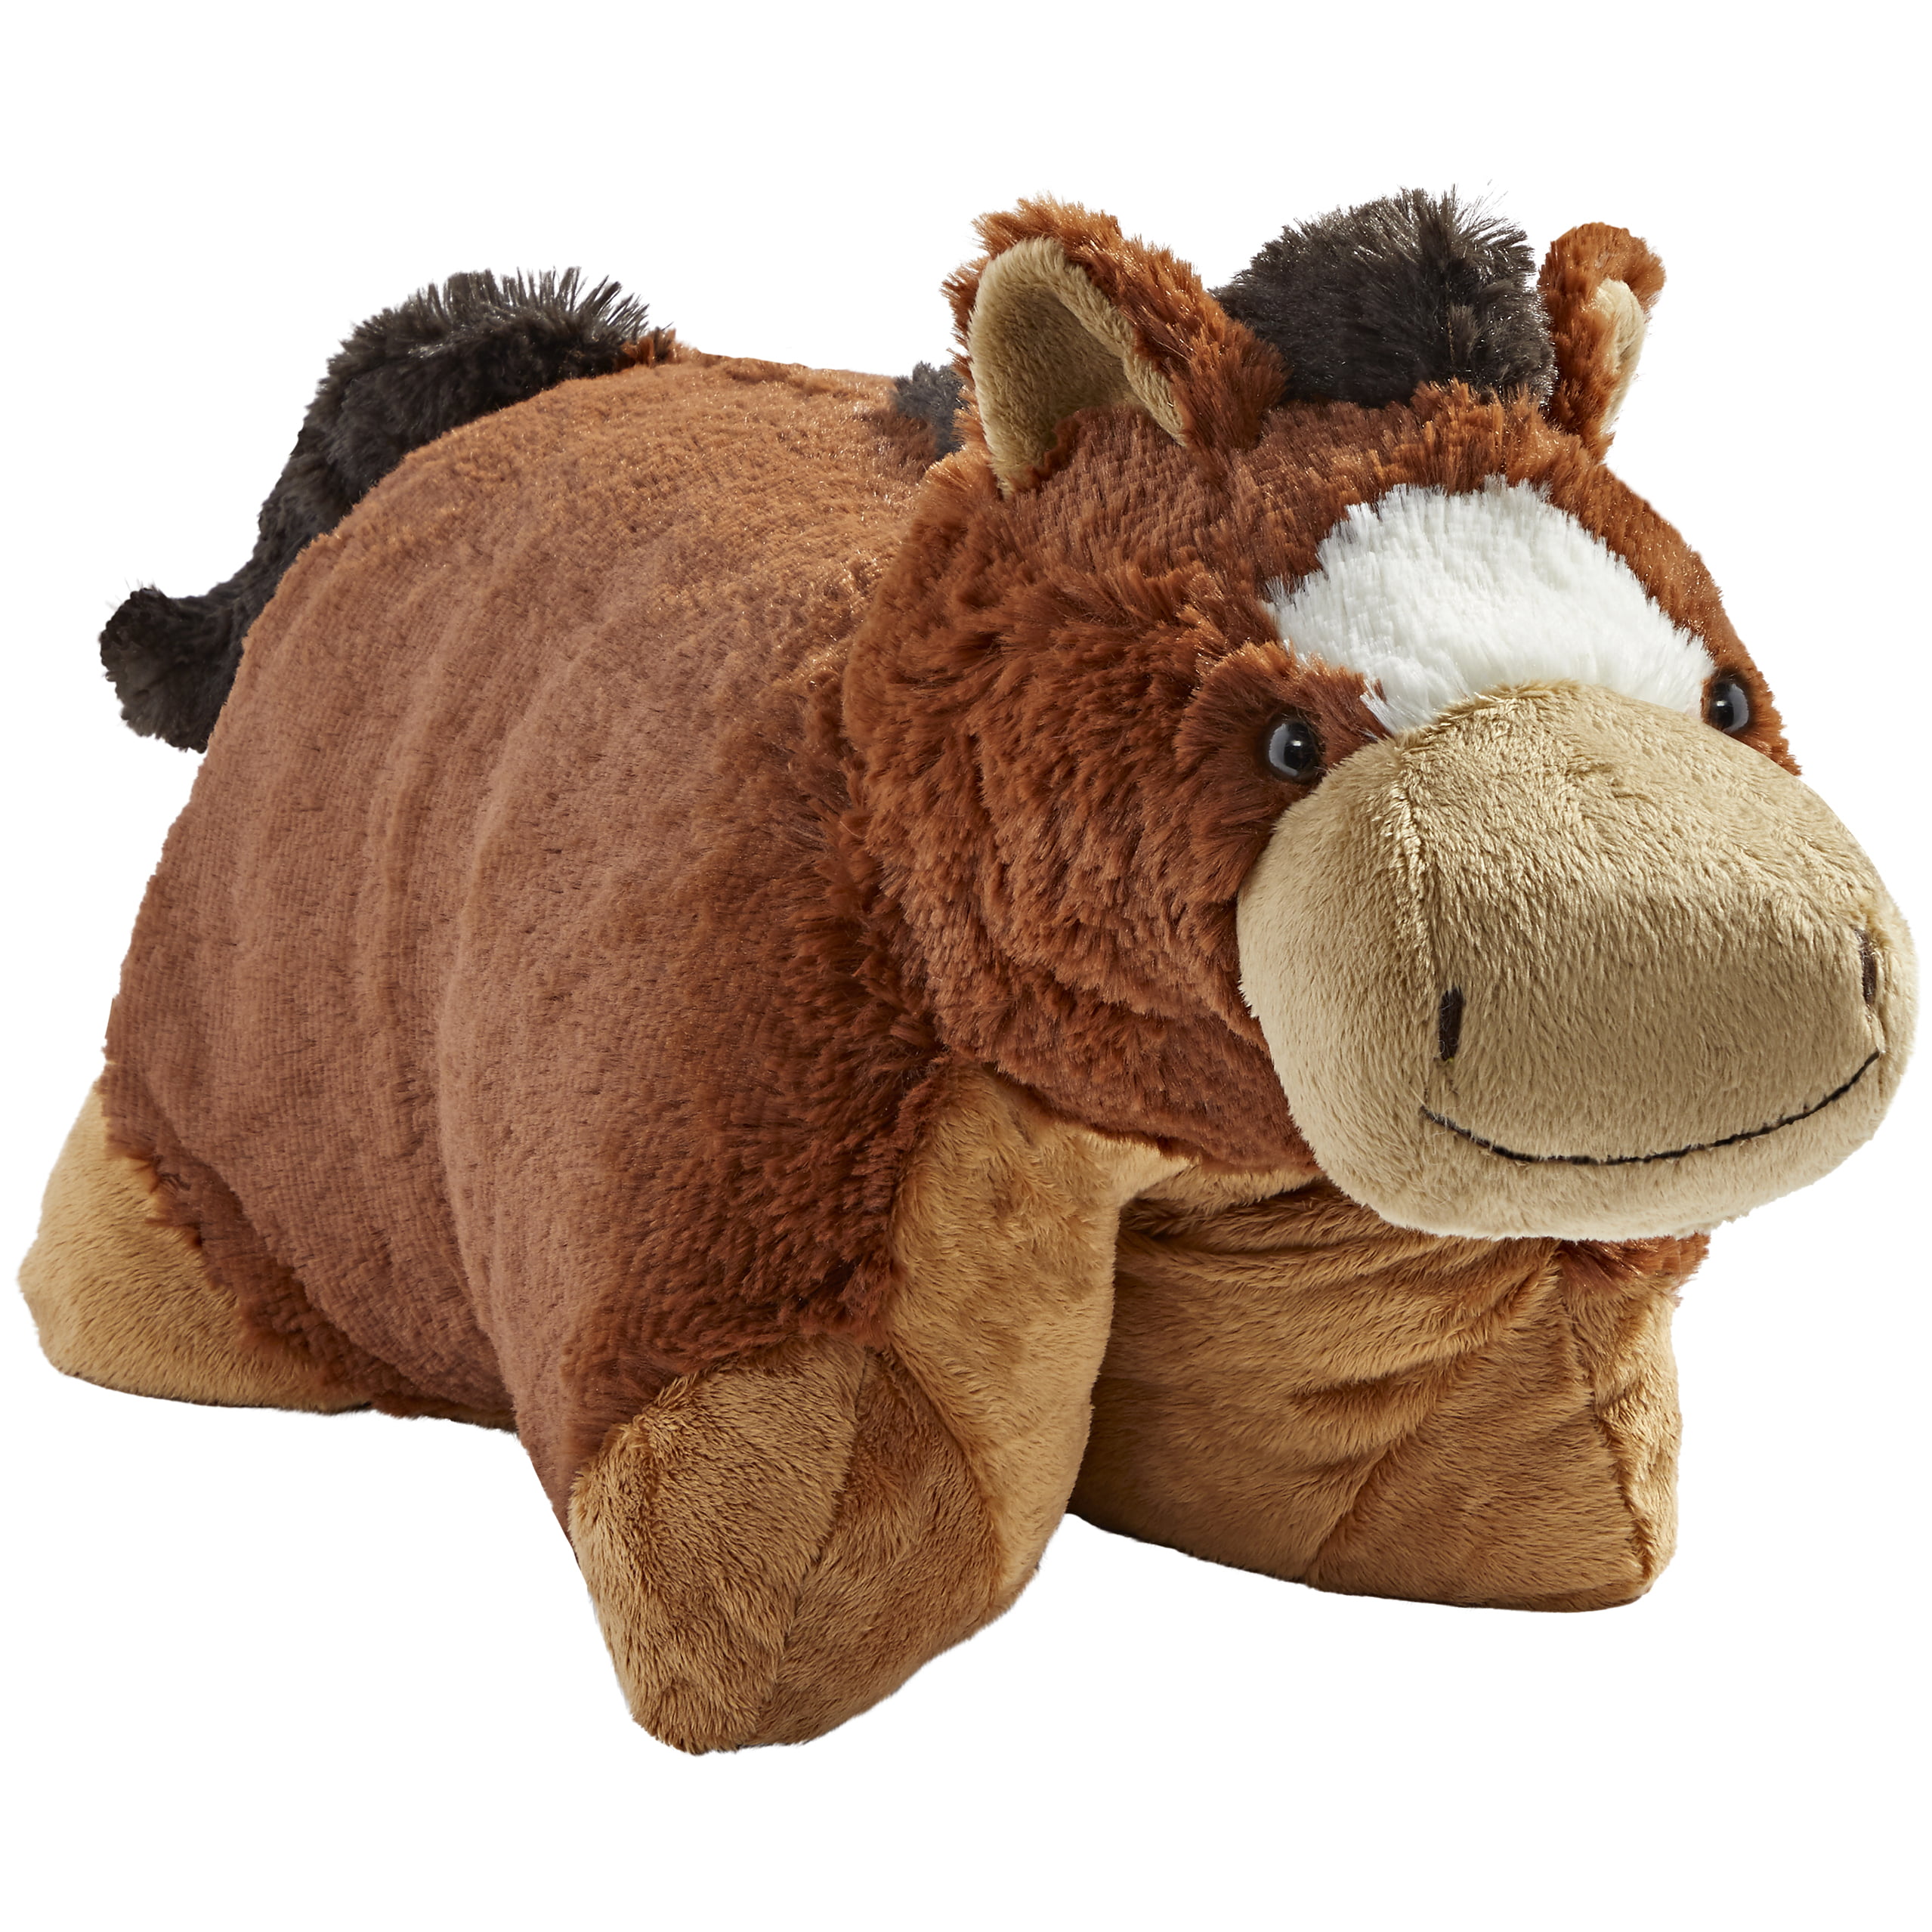 Sea Horse Stuffed Animals Pillow Set Plush Soft Toy Birthday Gift Throw Pillow